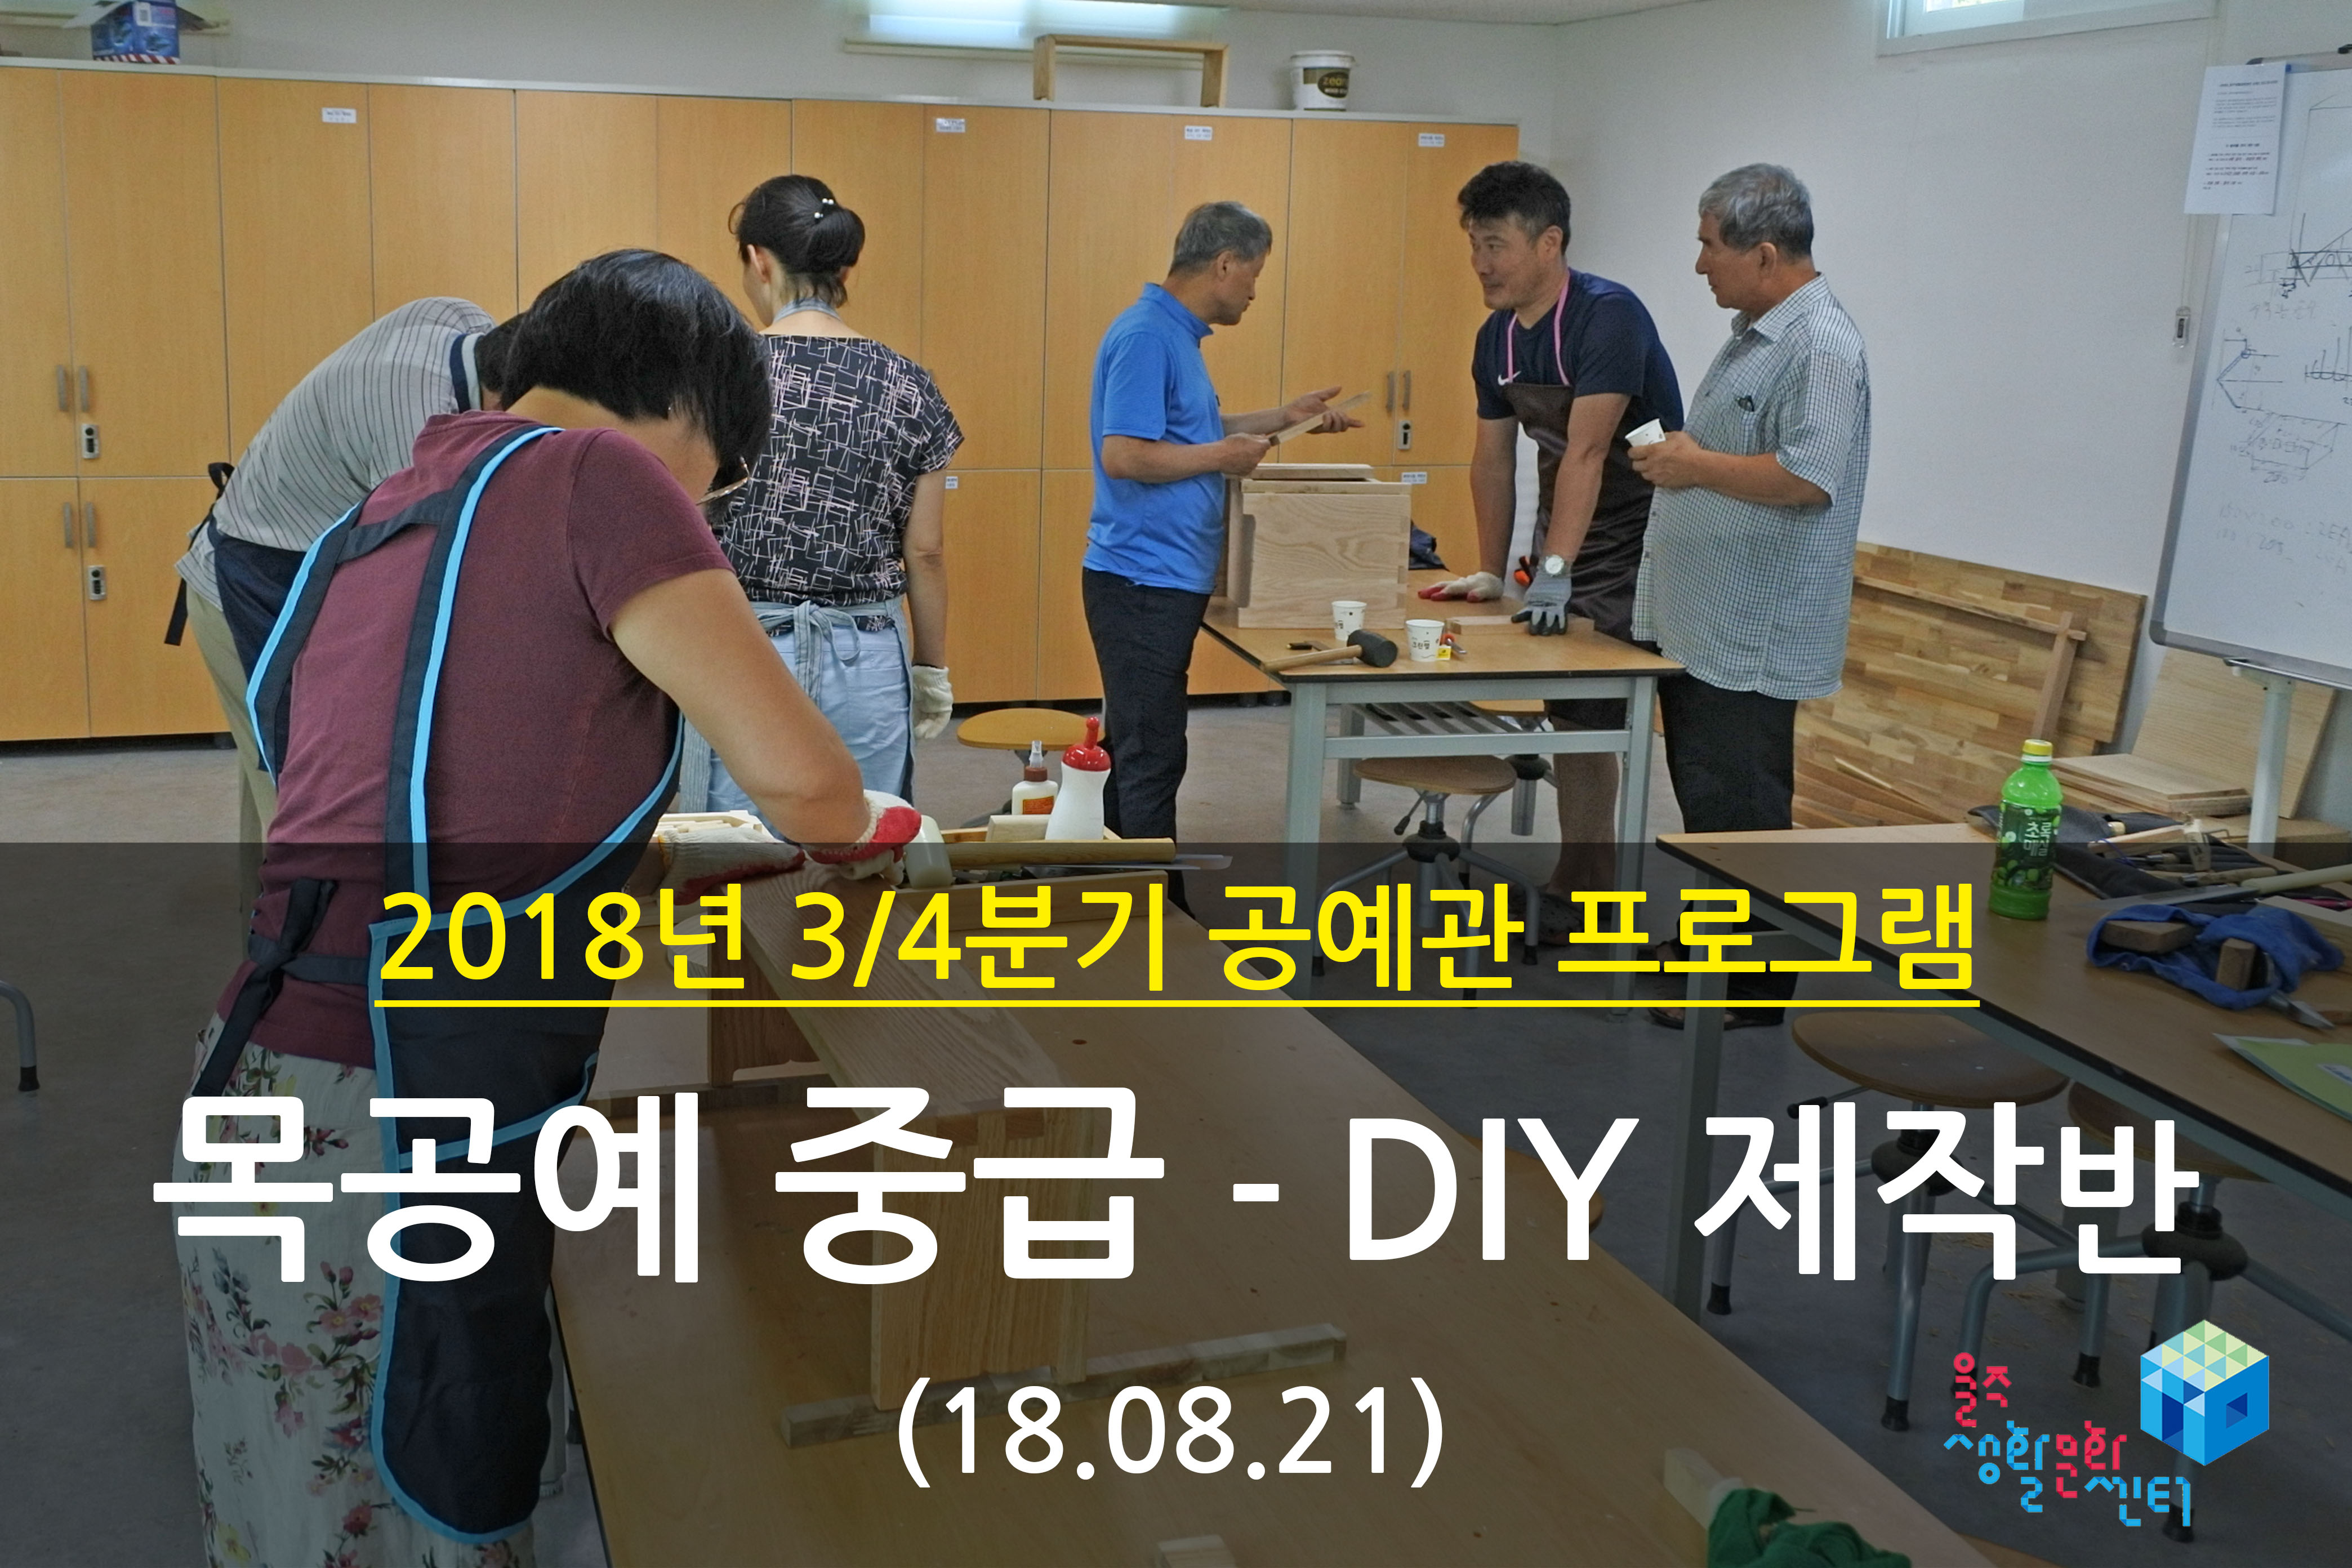 2018.08.21 _ 목공예 중급 - DIY 제작반 _ 3/4분기 7주차 수업